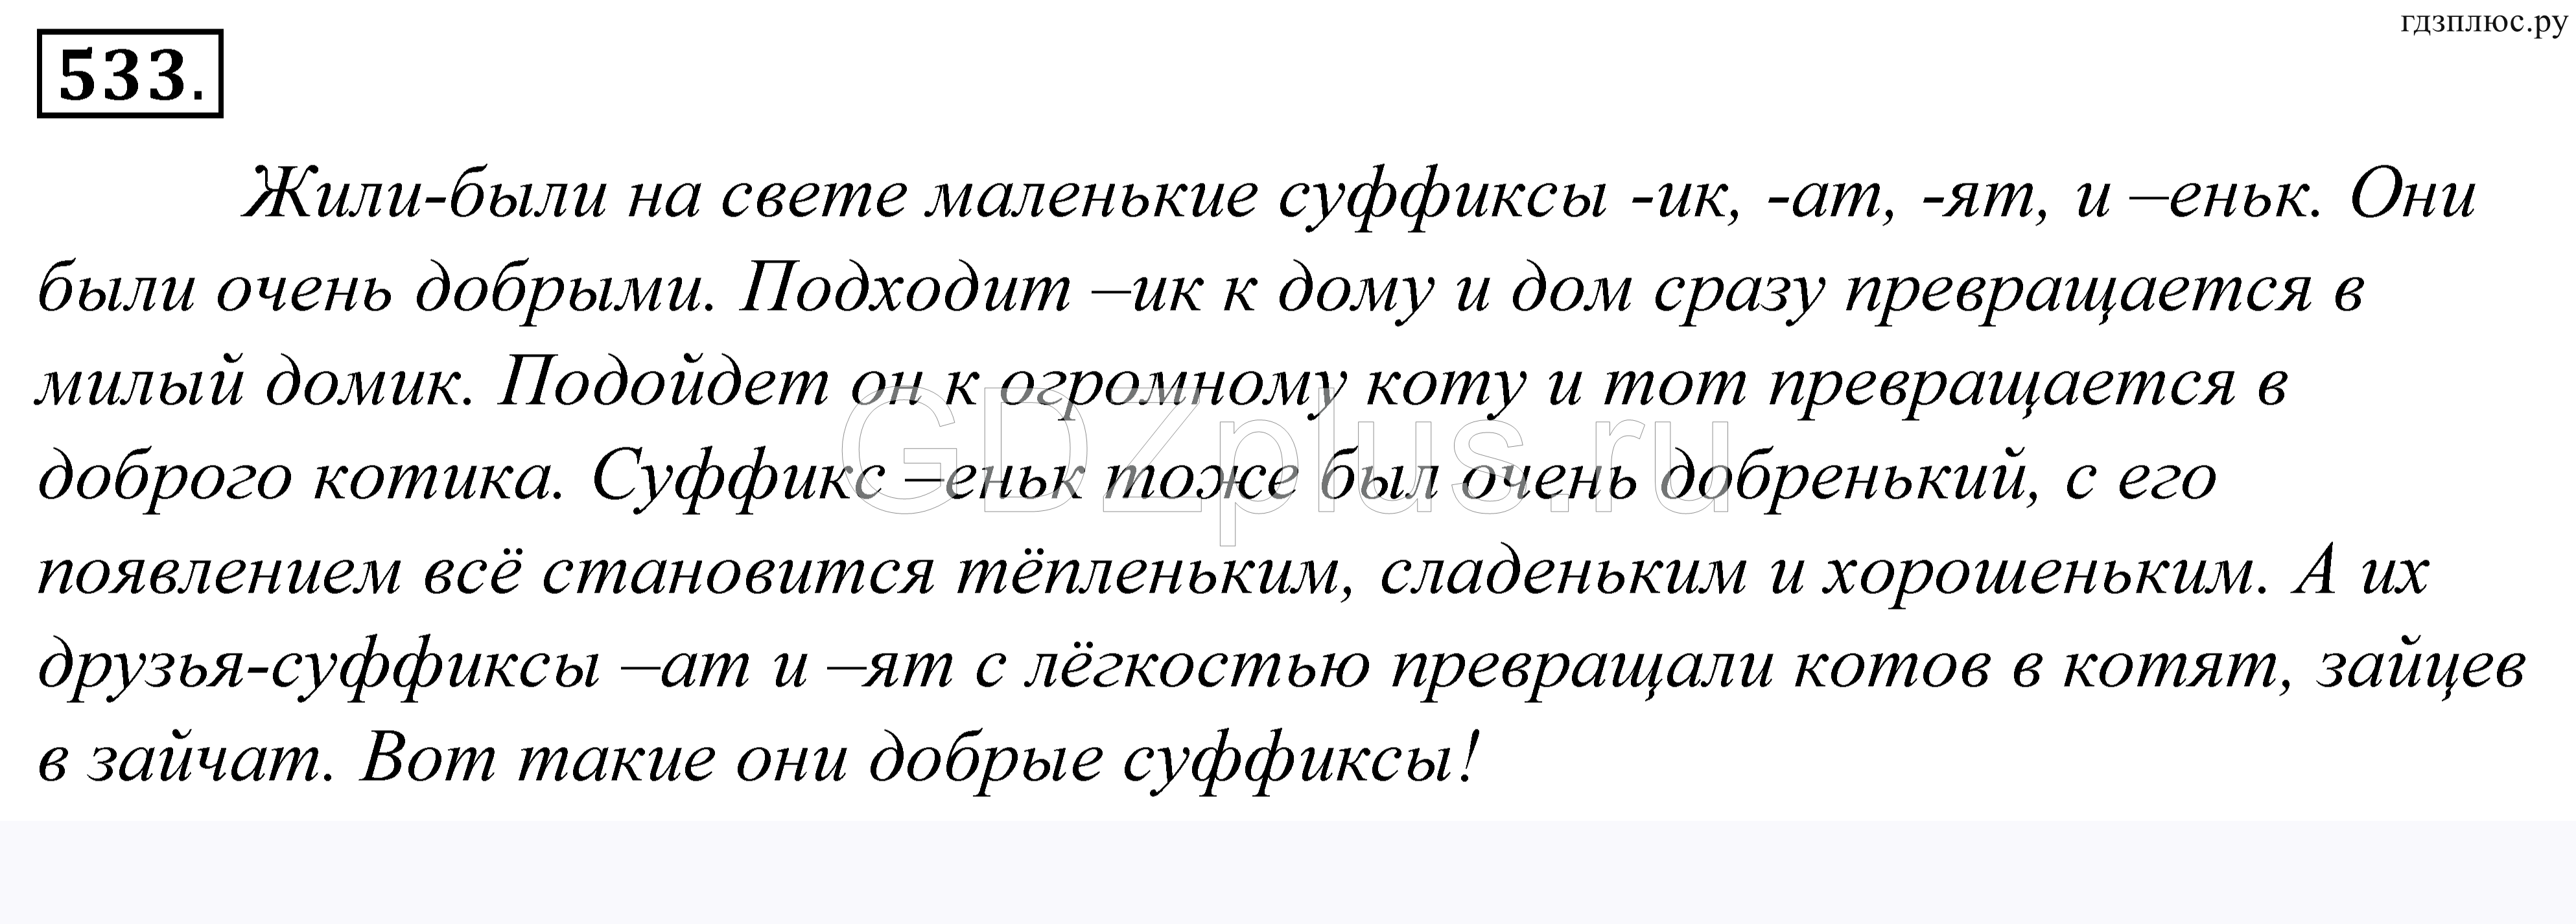 Русский язык страница 92 проект